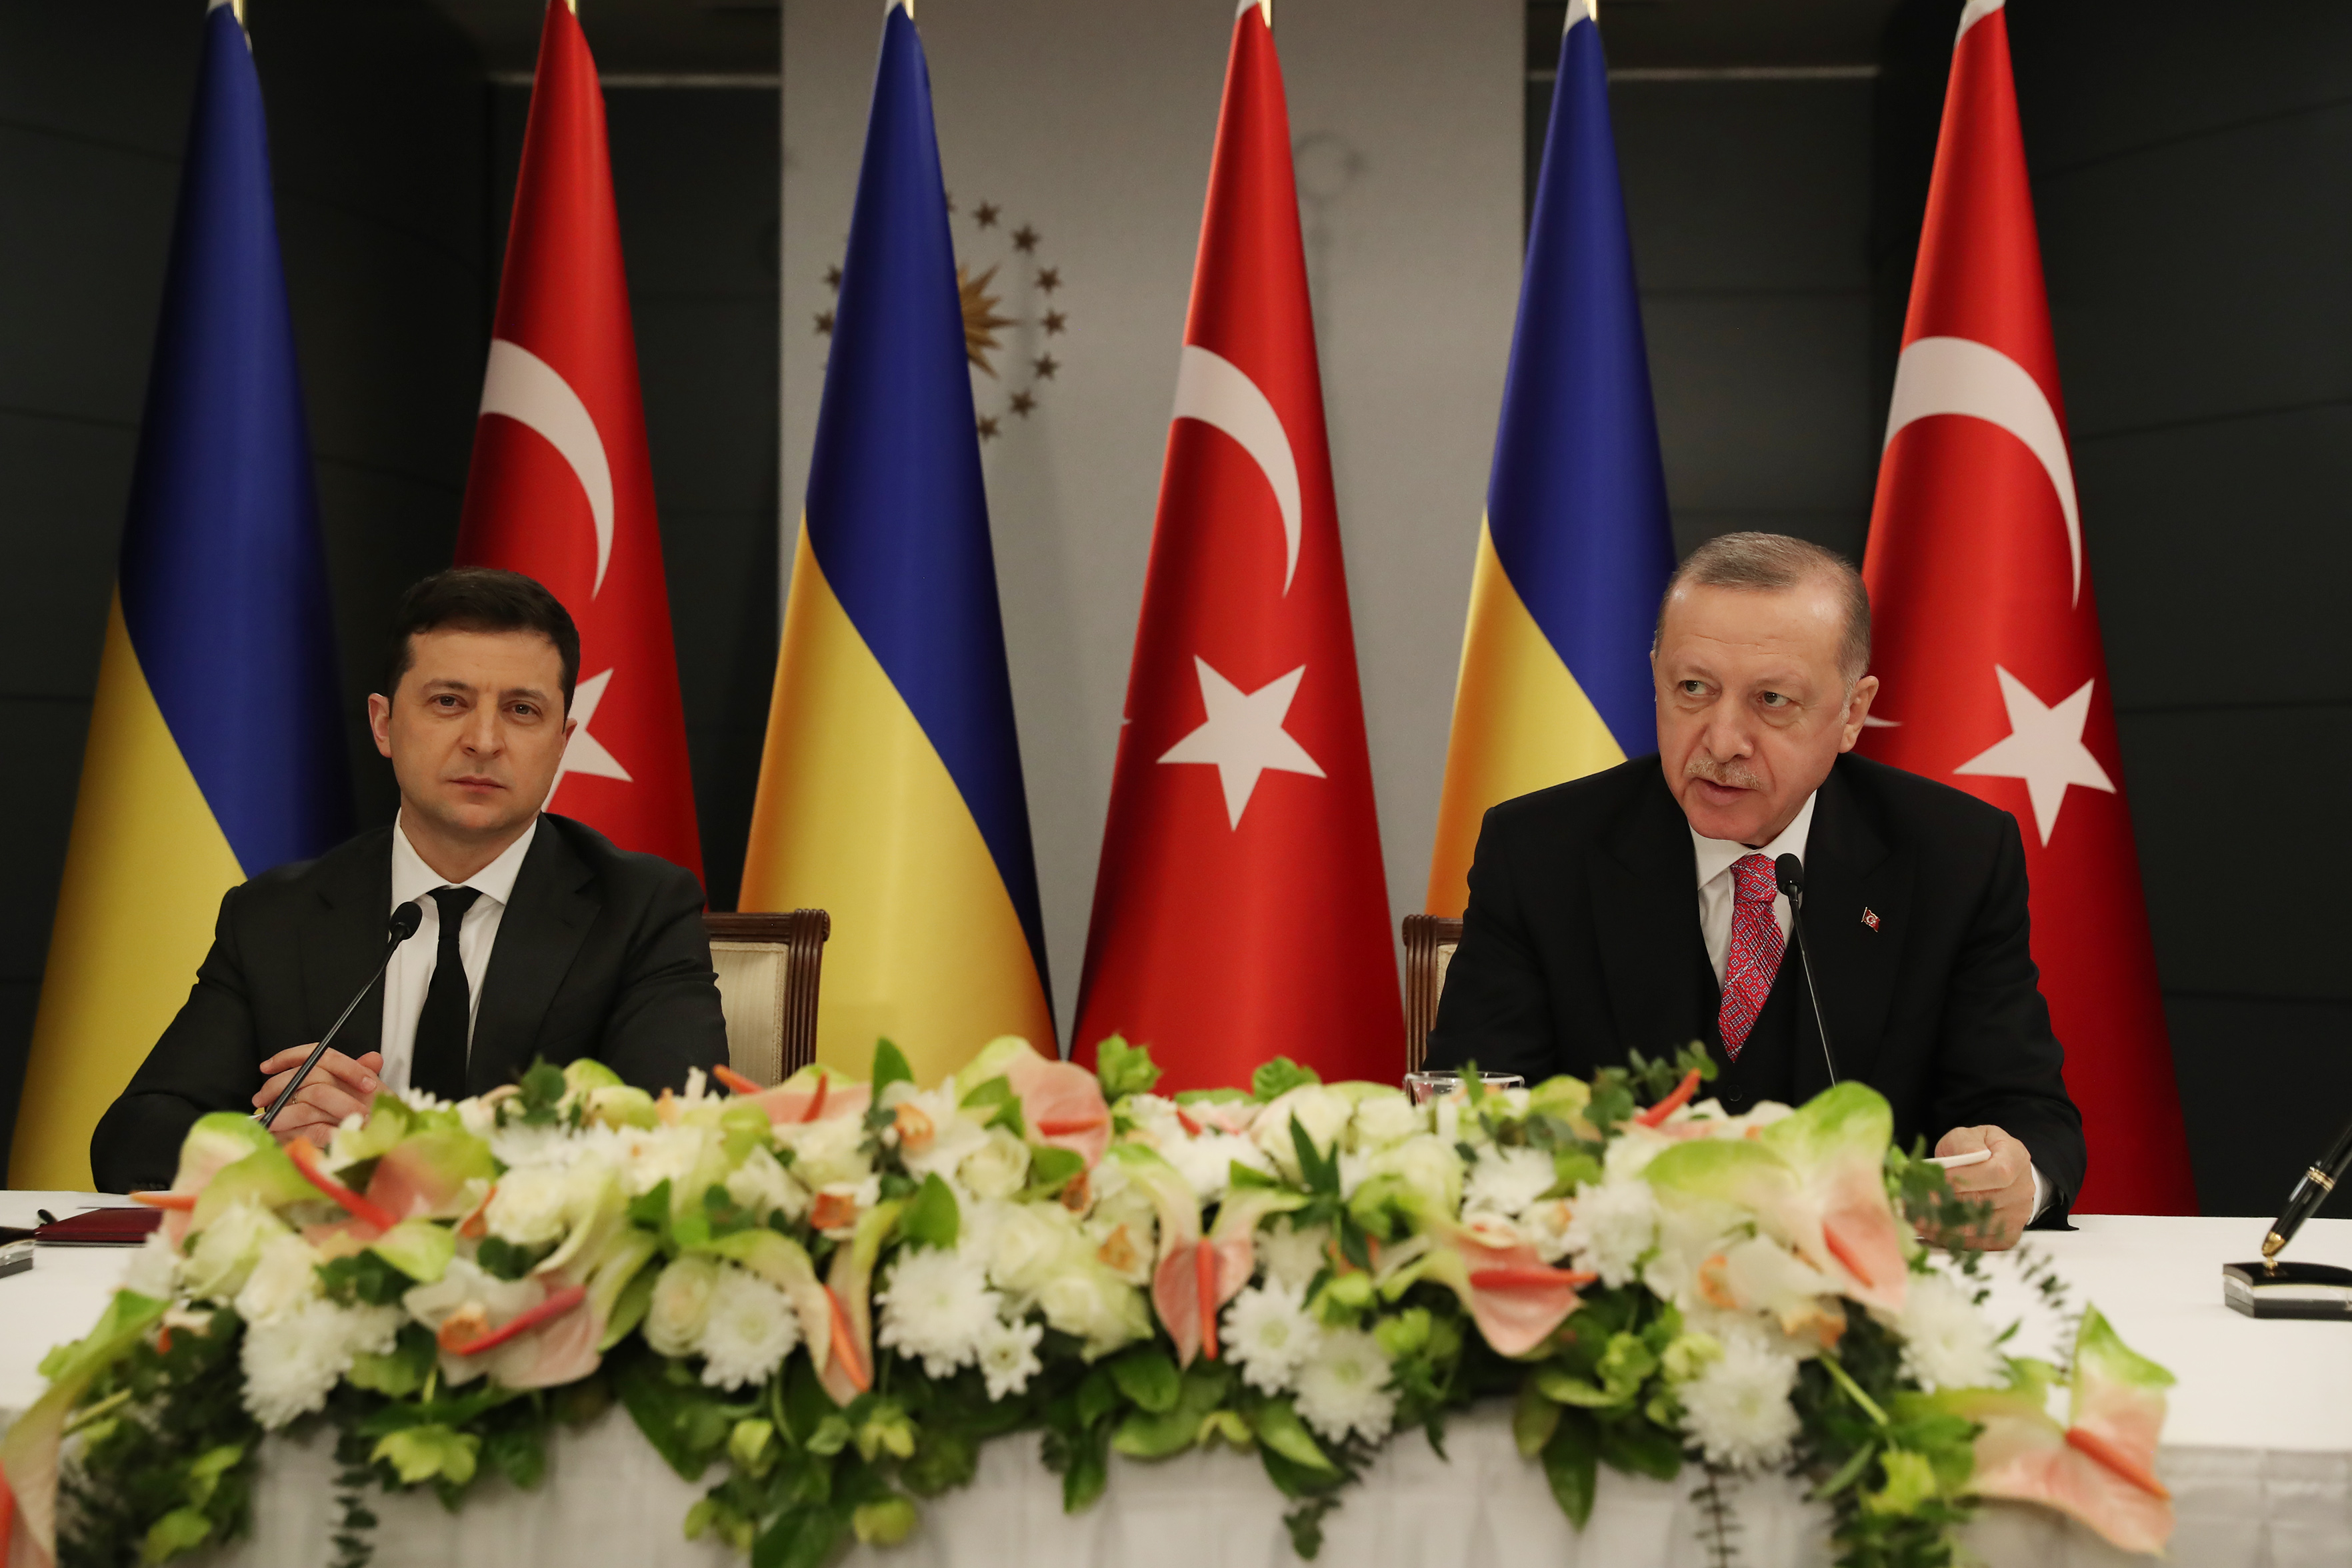 Стамбульский договор с украиной 2022 года